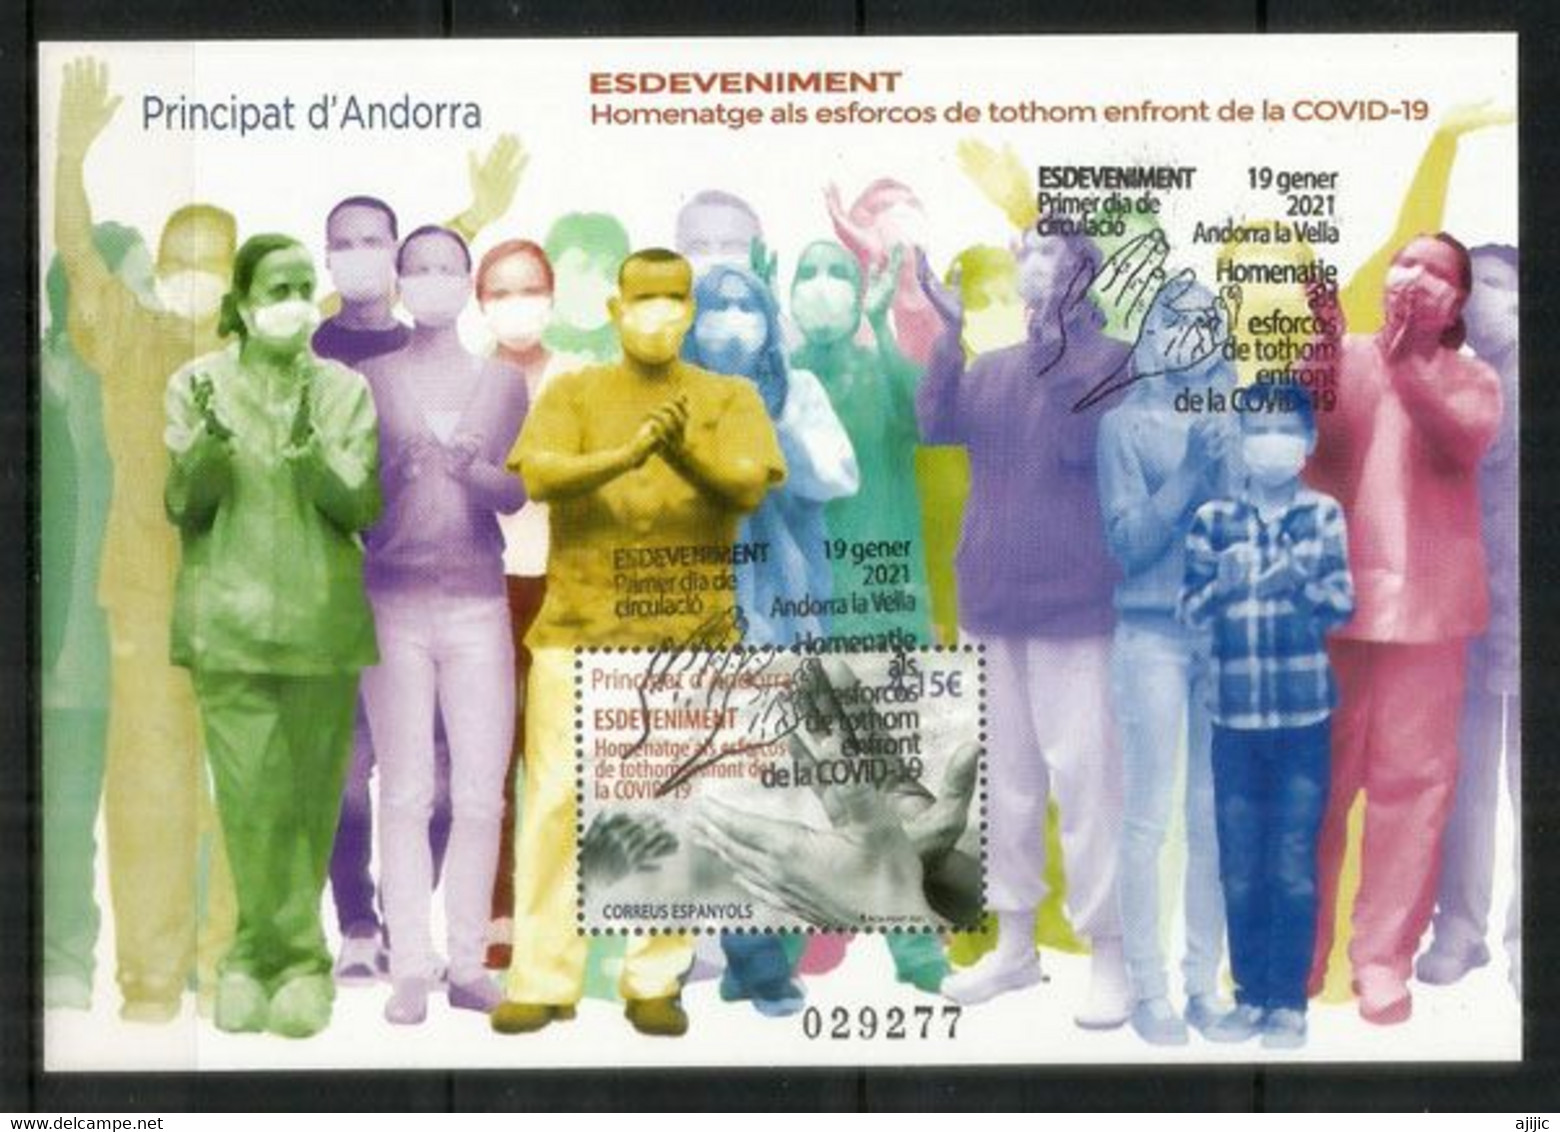 ANDORRA. COVID-19. HOMMAGE AUX EFFORTS DE TOUS DEVANT LE COVID-19. Bloc-Feuillet Oblitéré, 1 ère Qualité - Used Stamps